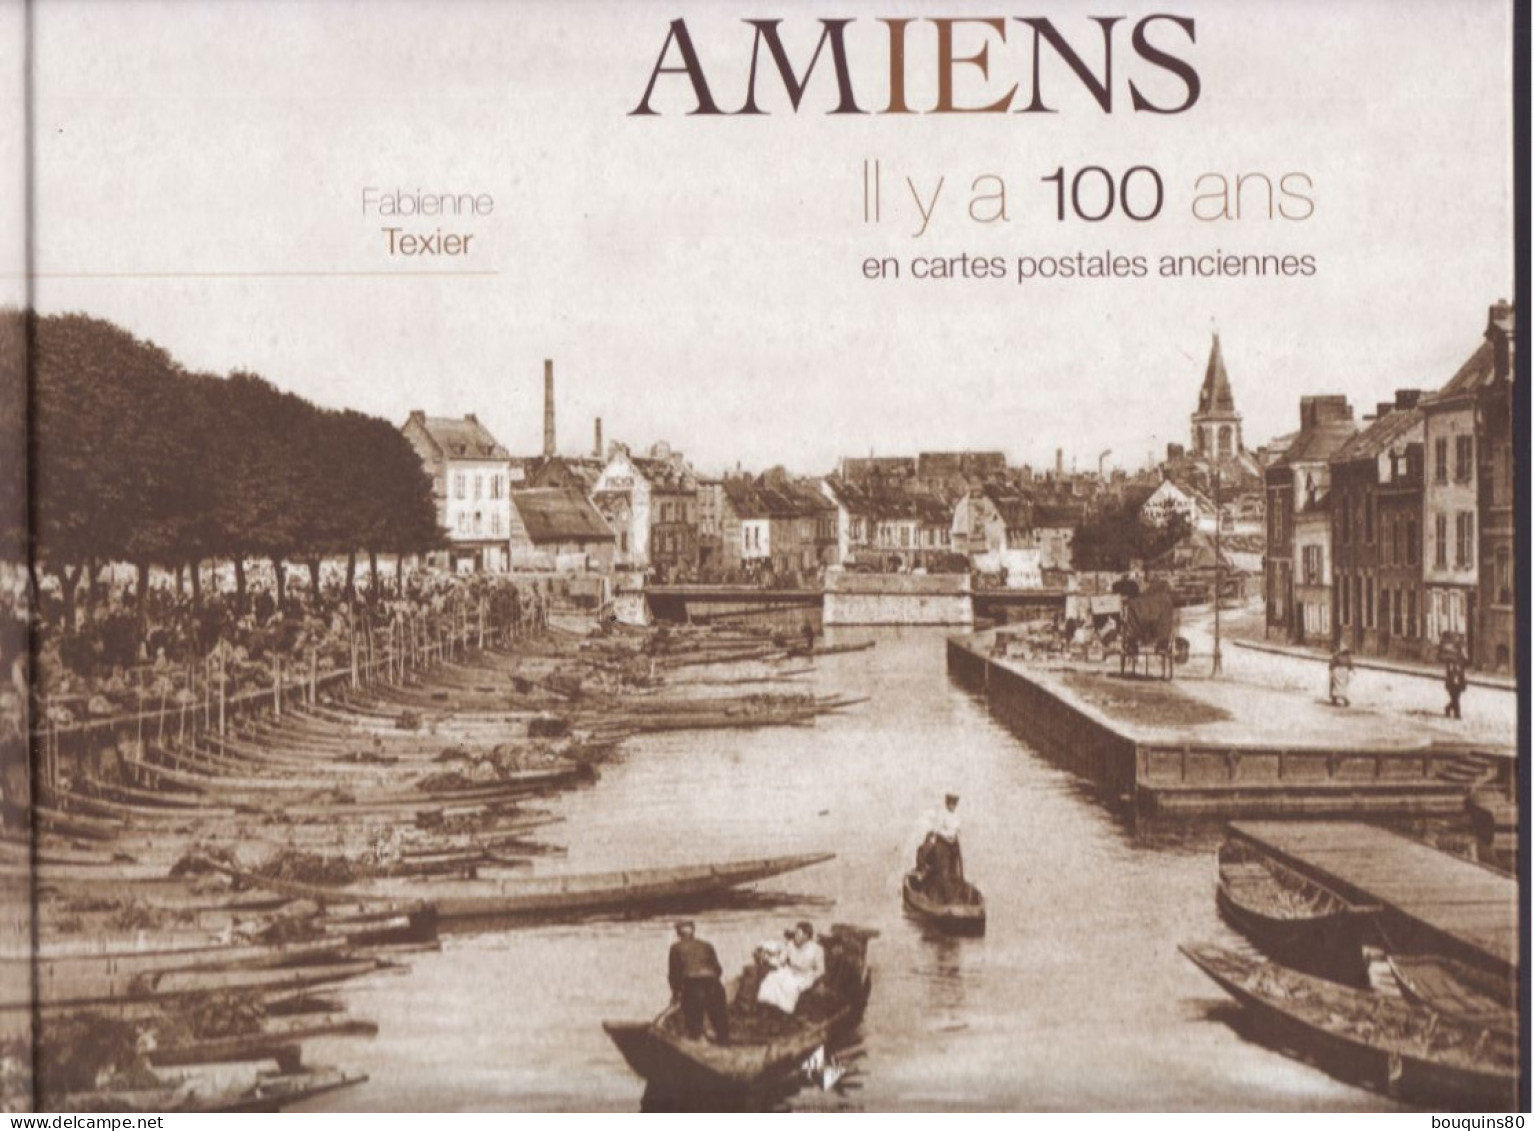 AMIENS IL Y A CENT ANS EN CARTES POSTALES ANCIENNES De FABIENNE TEXIER 2014 - Picardie - Nord-Pas-de-Calais